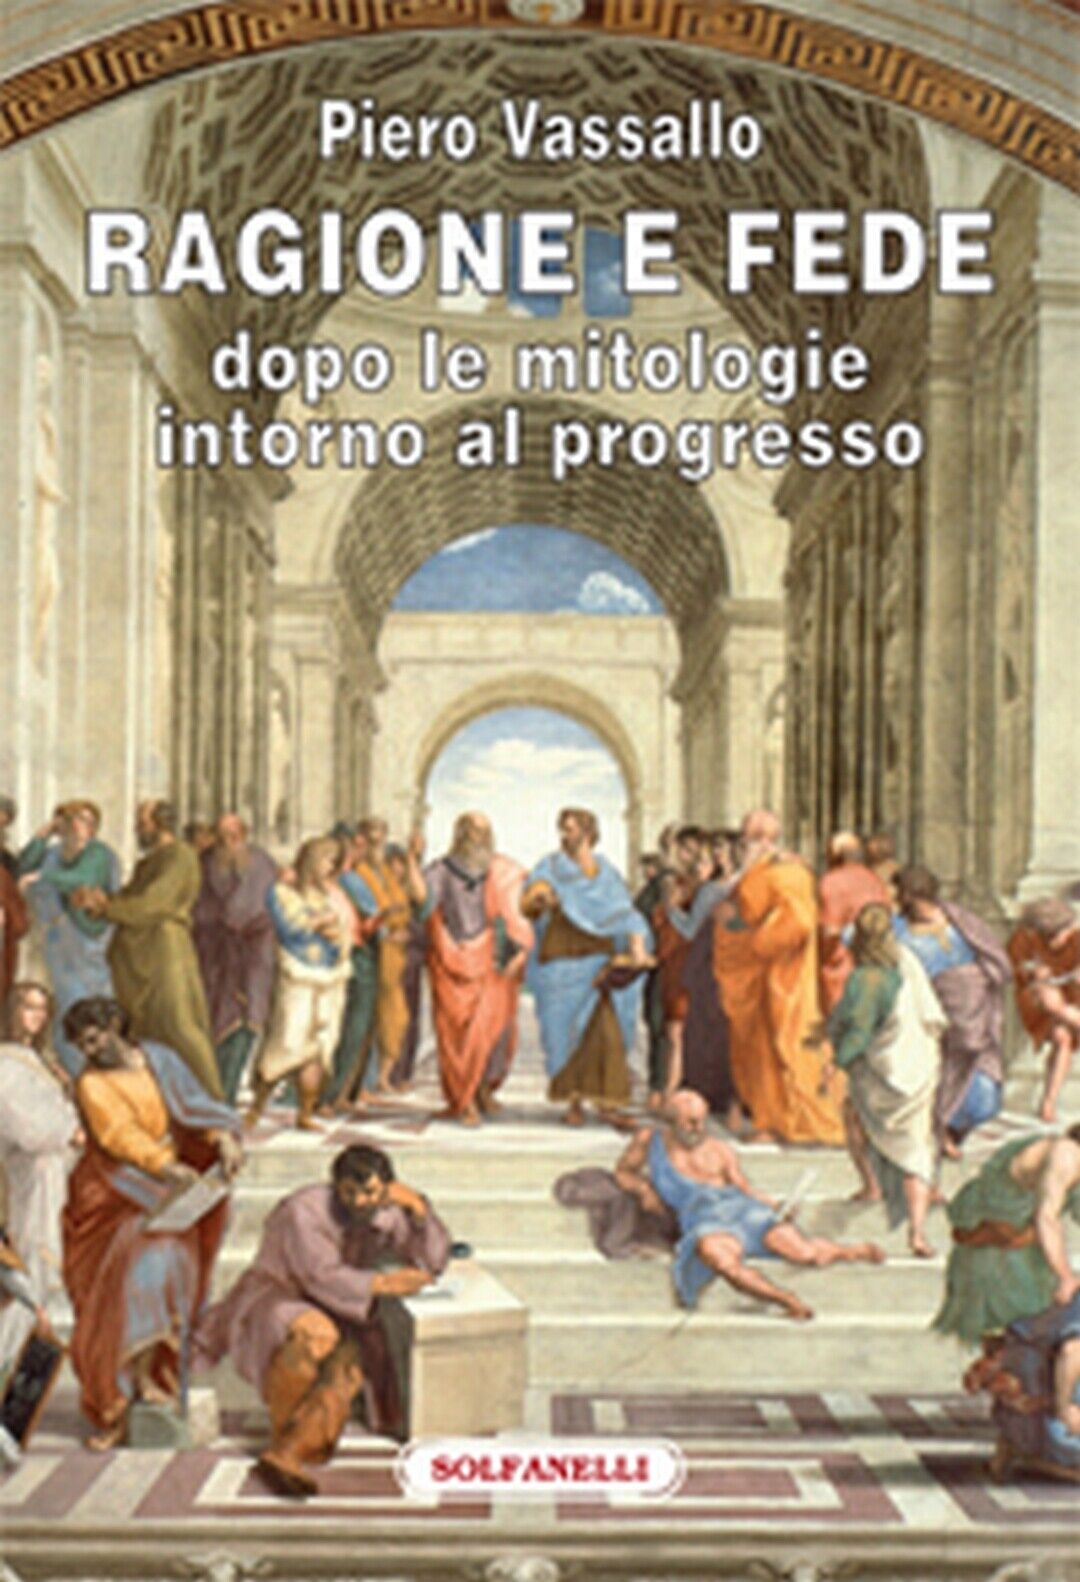 RAGIONE E FEDE dopo le mitologie intorno al progresso, Piero Vassallo,  Solfanel